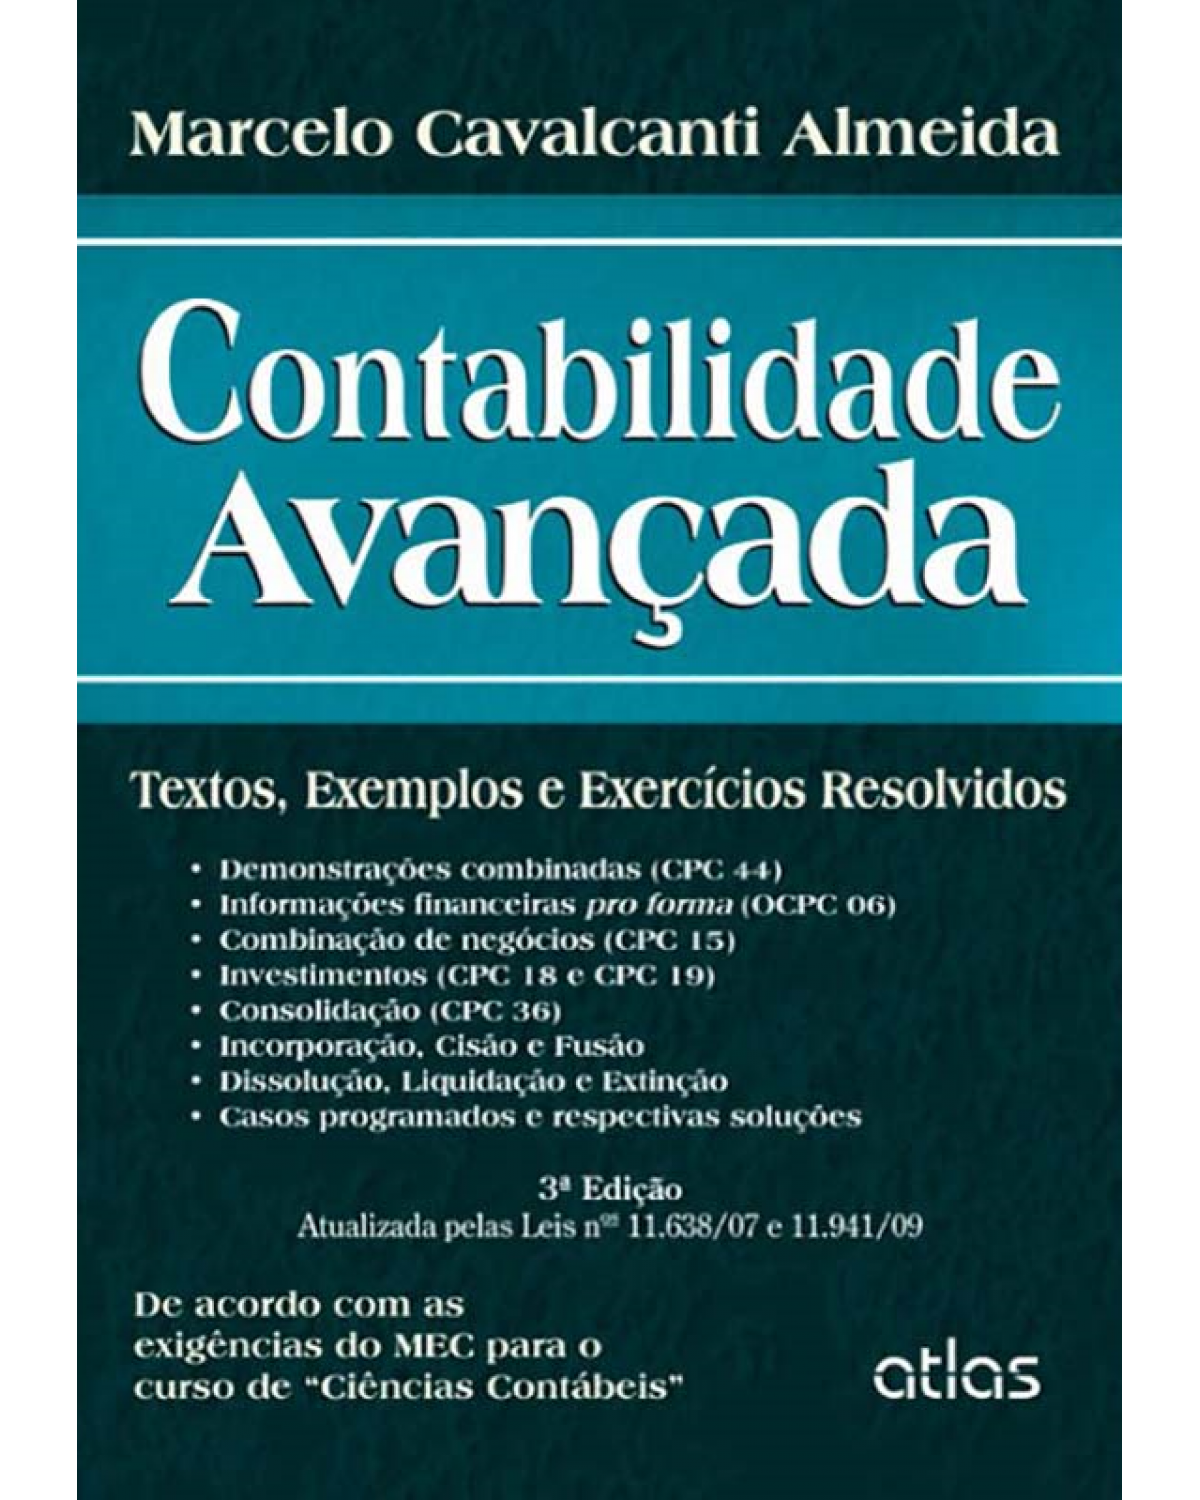 Contabilidade avançada - Textos, exemplos e exercícios resolvidos - 3ª Edição | 2013